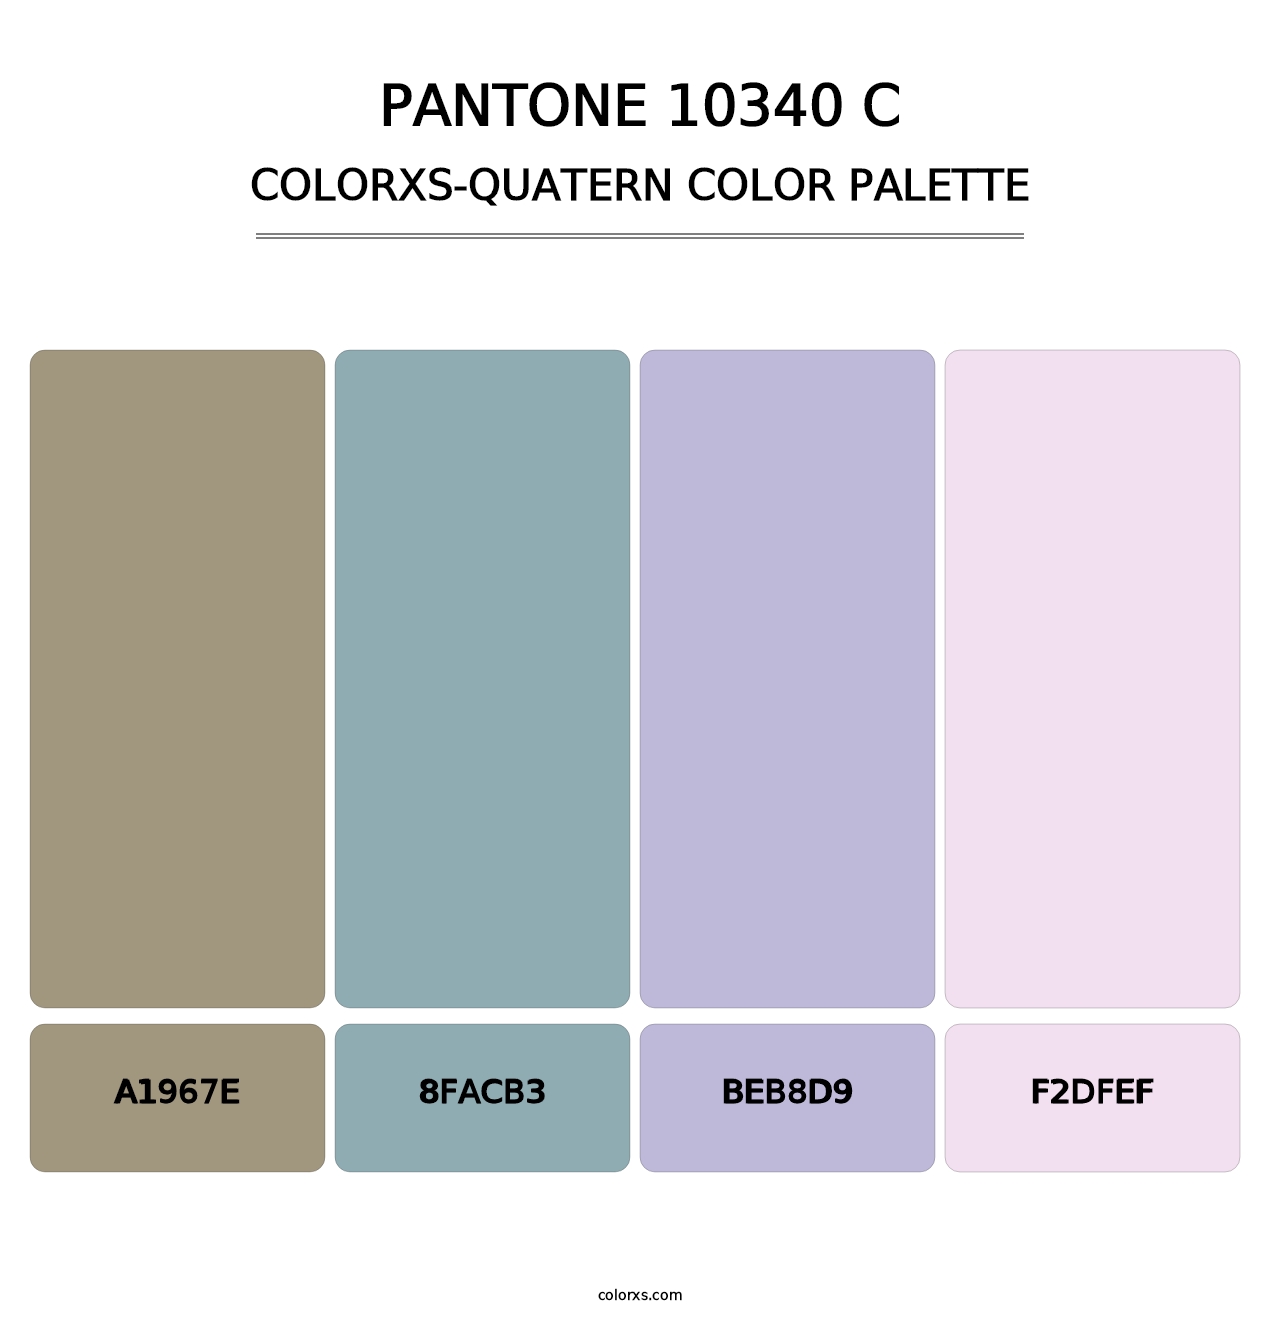 PANTONE 10340 C - Colorxs Quatern Palette